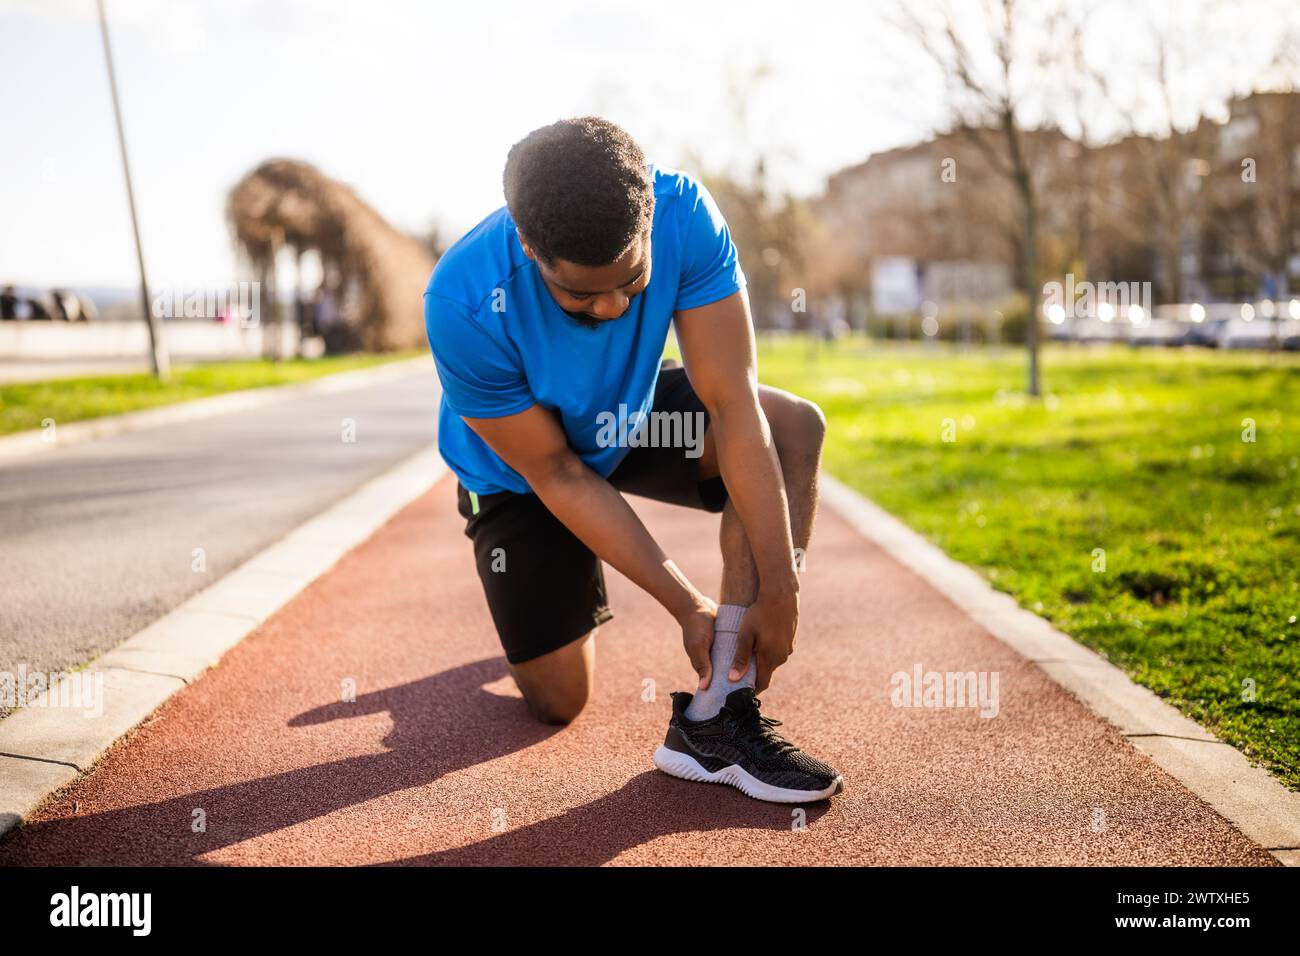 Un jeune homme afro-américain est blessé en faisant du jogging. Il s'est tordu la cheville. Banque D'Images